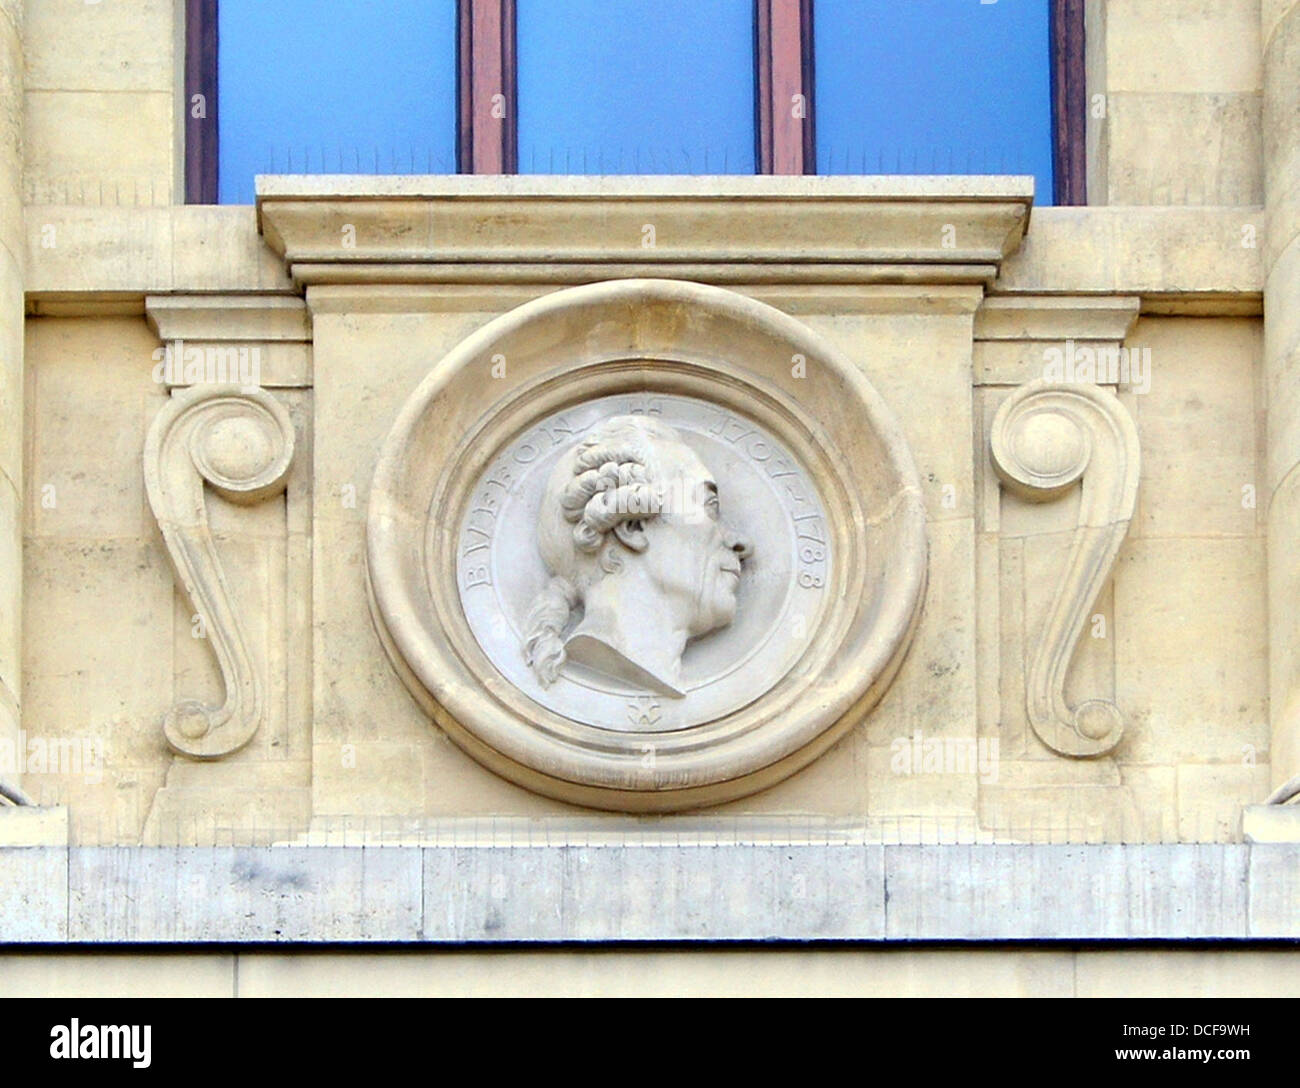 Buffon. Troisième mascaron (gauche) sur la façade de la Grande Galerie de l'évolution, au Jardin des Plantes de Paris Banque D'Images